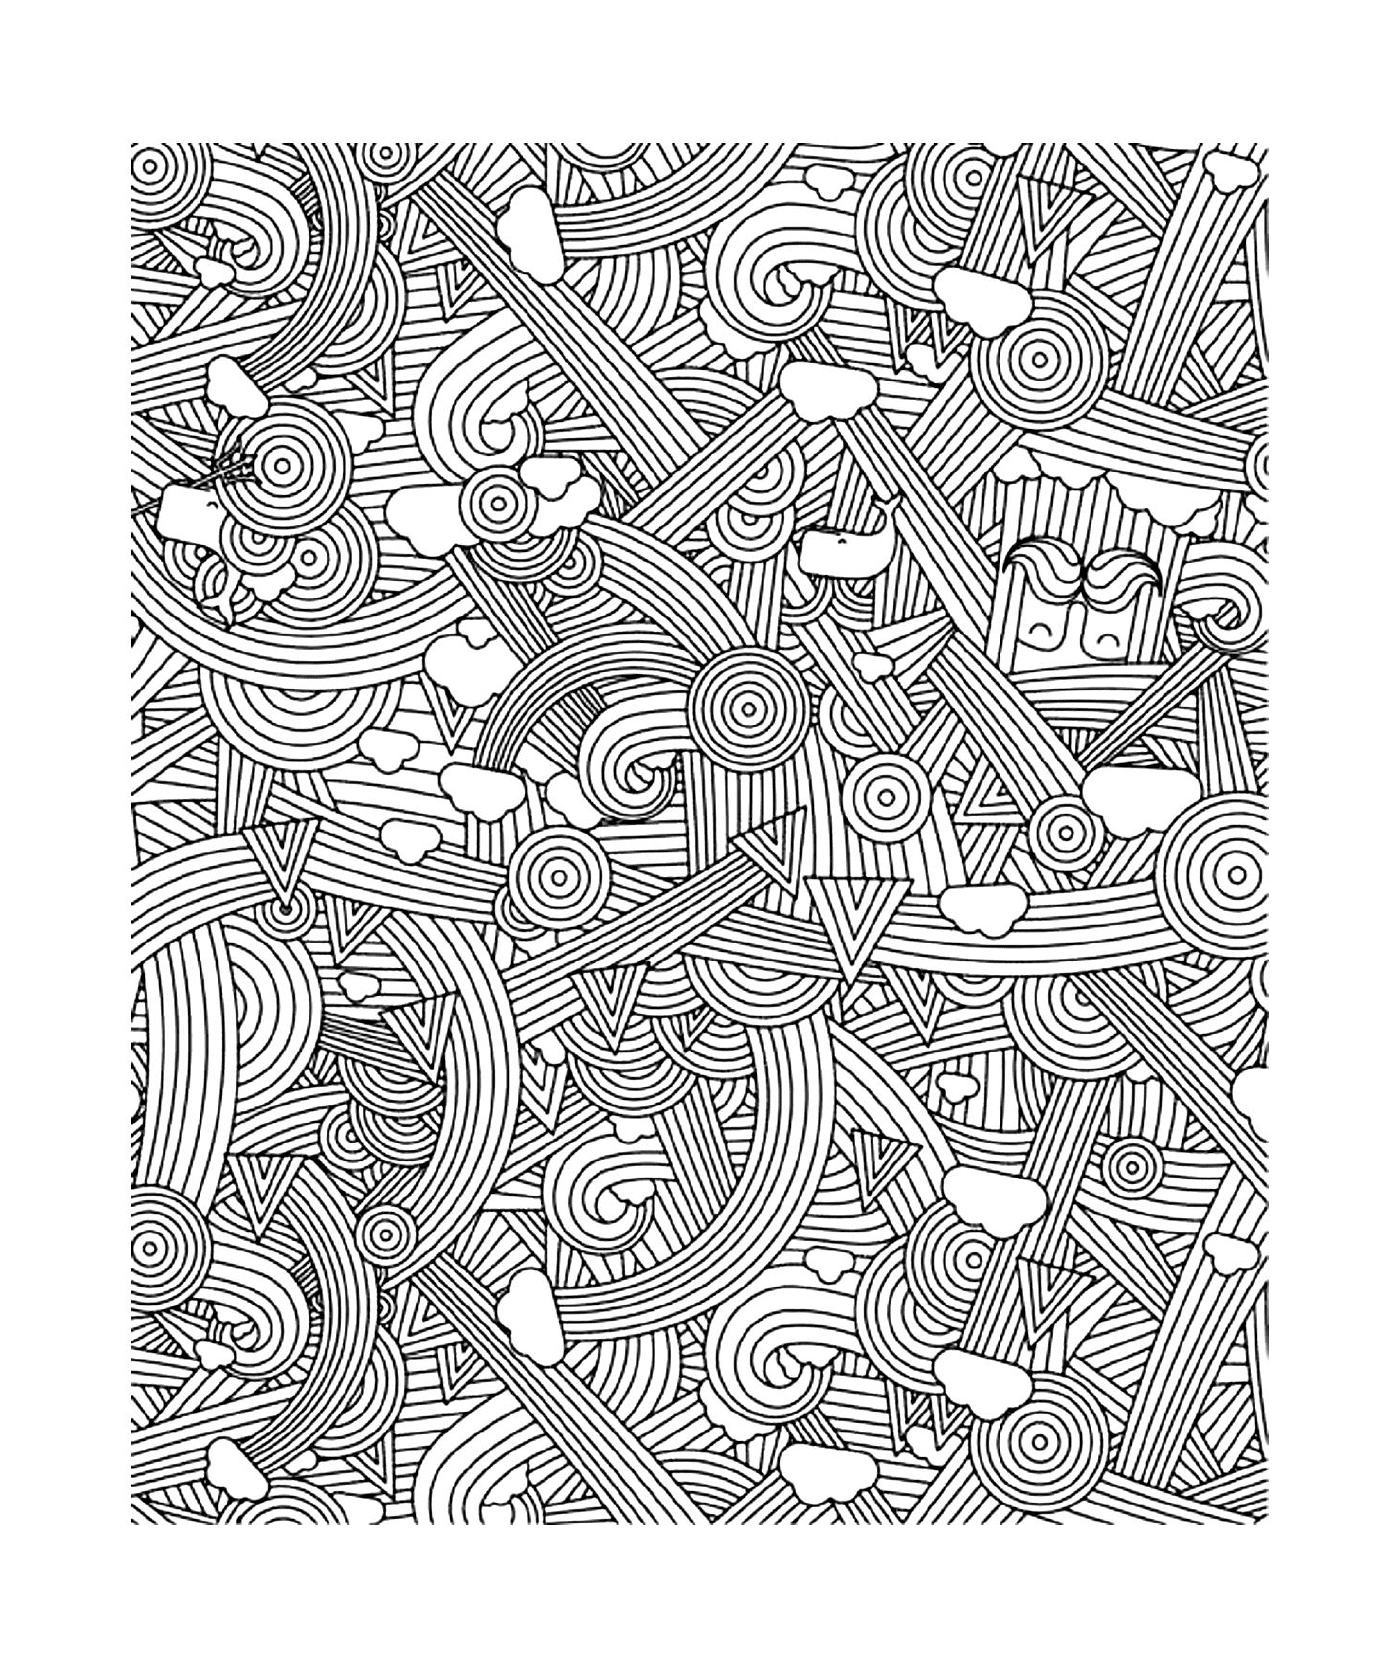  Imagen de un patrón con muchas líneas 